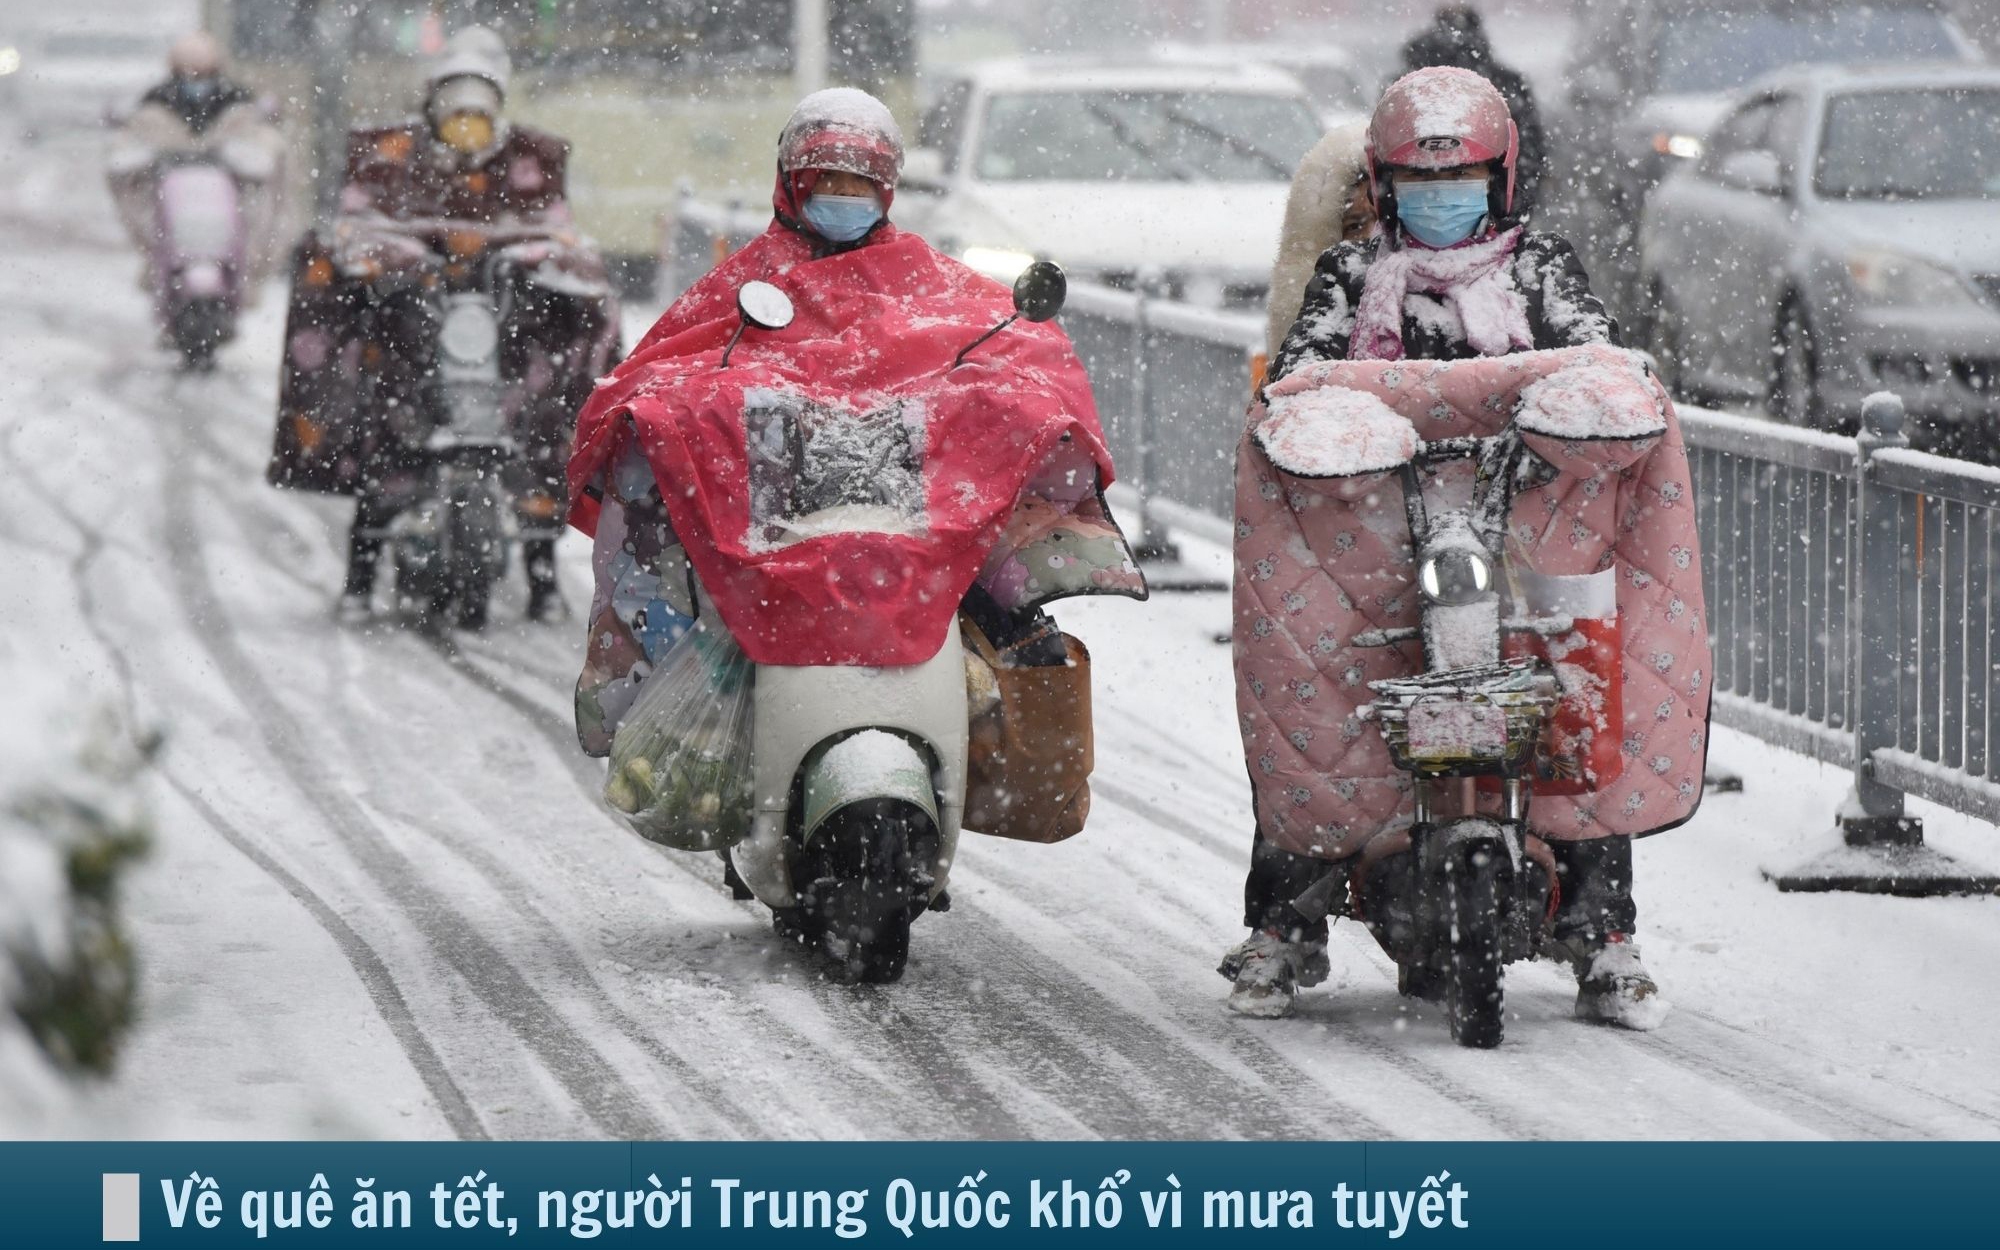 Hình ảnh báo chí 24h: Về quê ăn tết, người Trung Quốc khốn khổ vì mưa tuyết